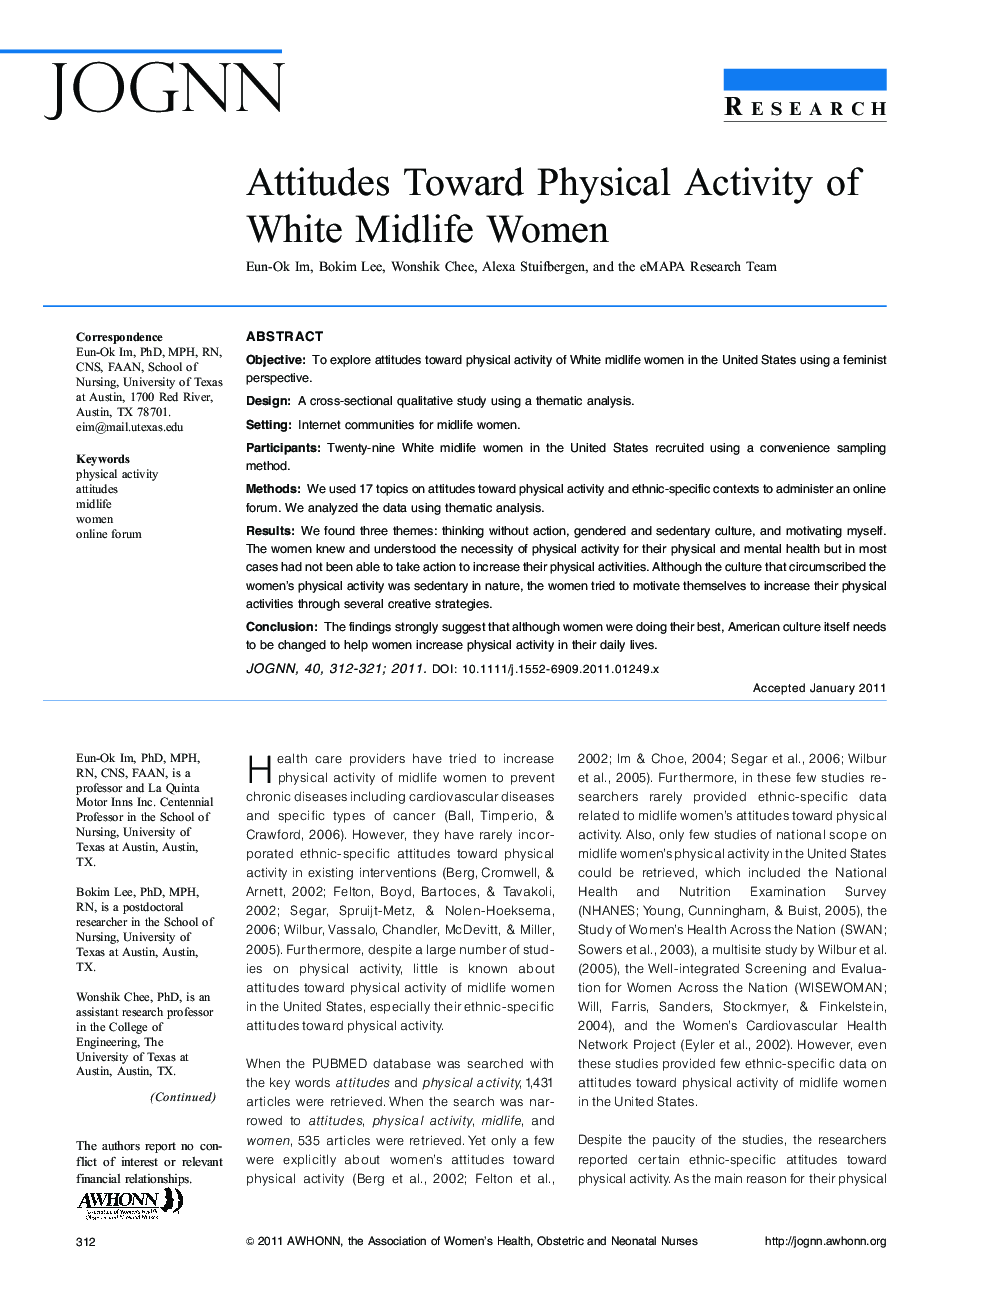 Attitudes Toward Physical Activity of White Midlife Women